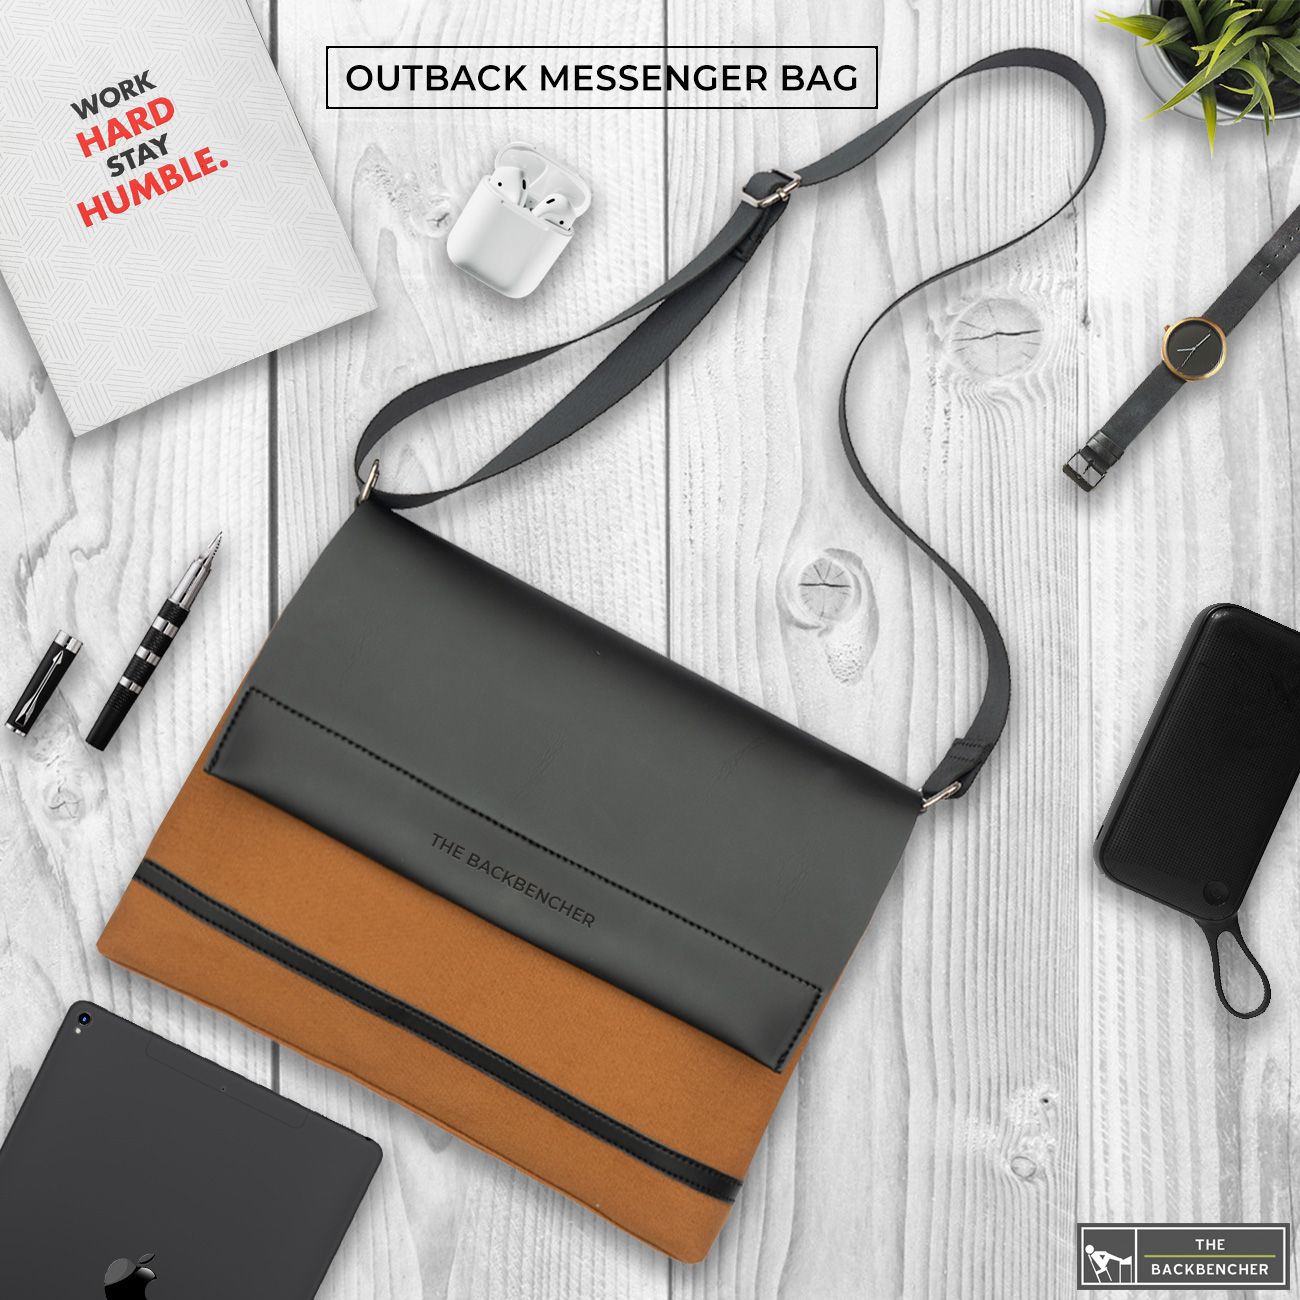 Outback Messenger Bag